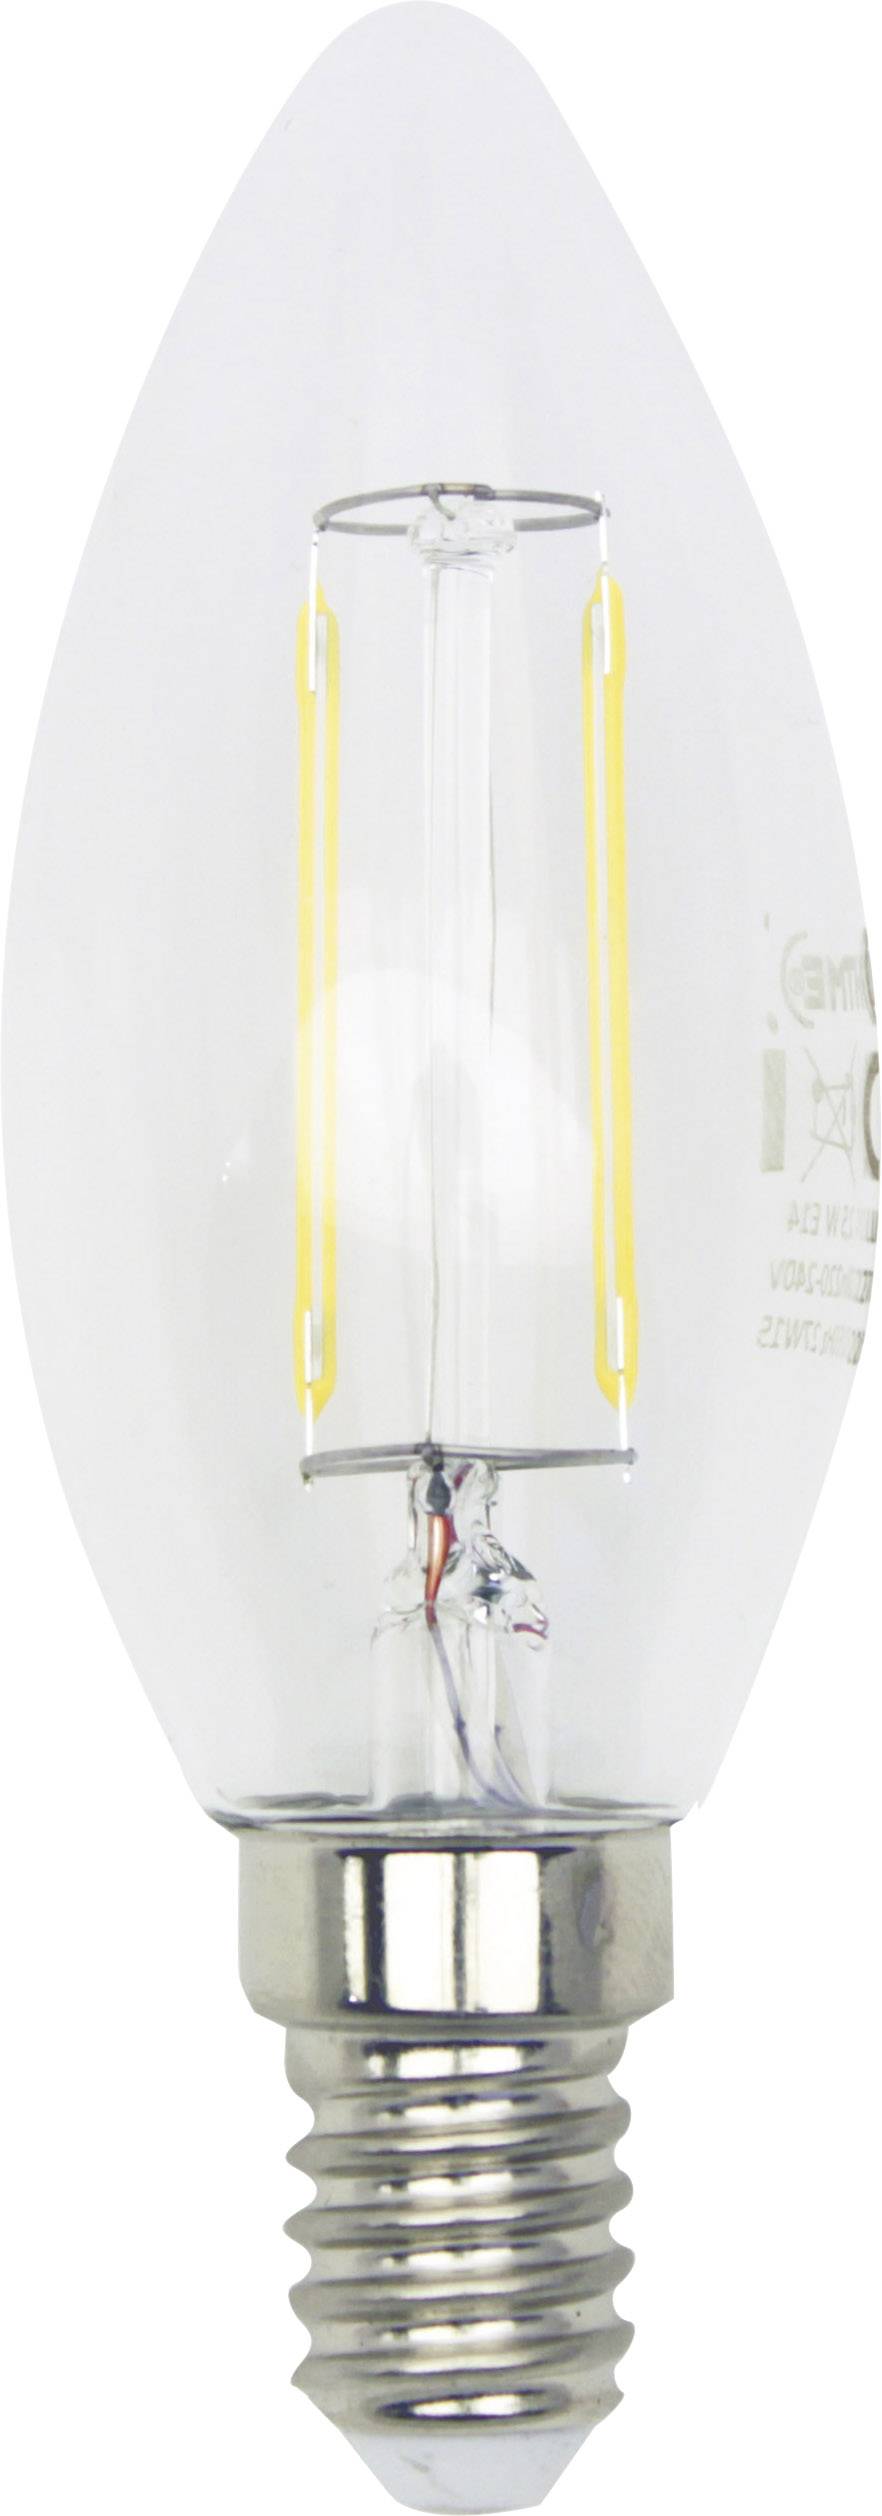 LIGHTME LED E14 Kerzenform 4 W = 40 W Warmweiß (Ø x L) 35 mm x 97 mm EEK: A++ dimmbar, Filament